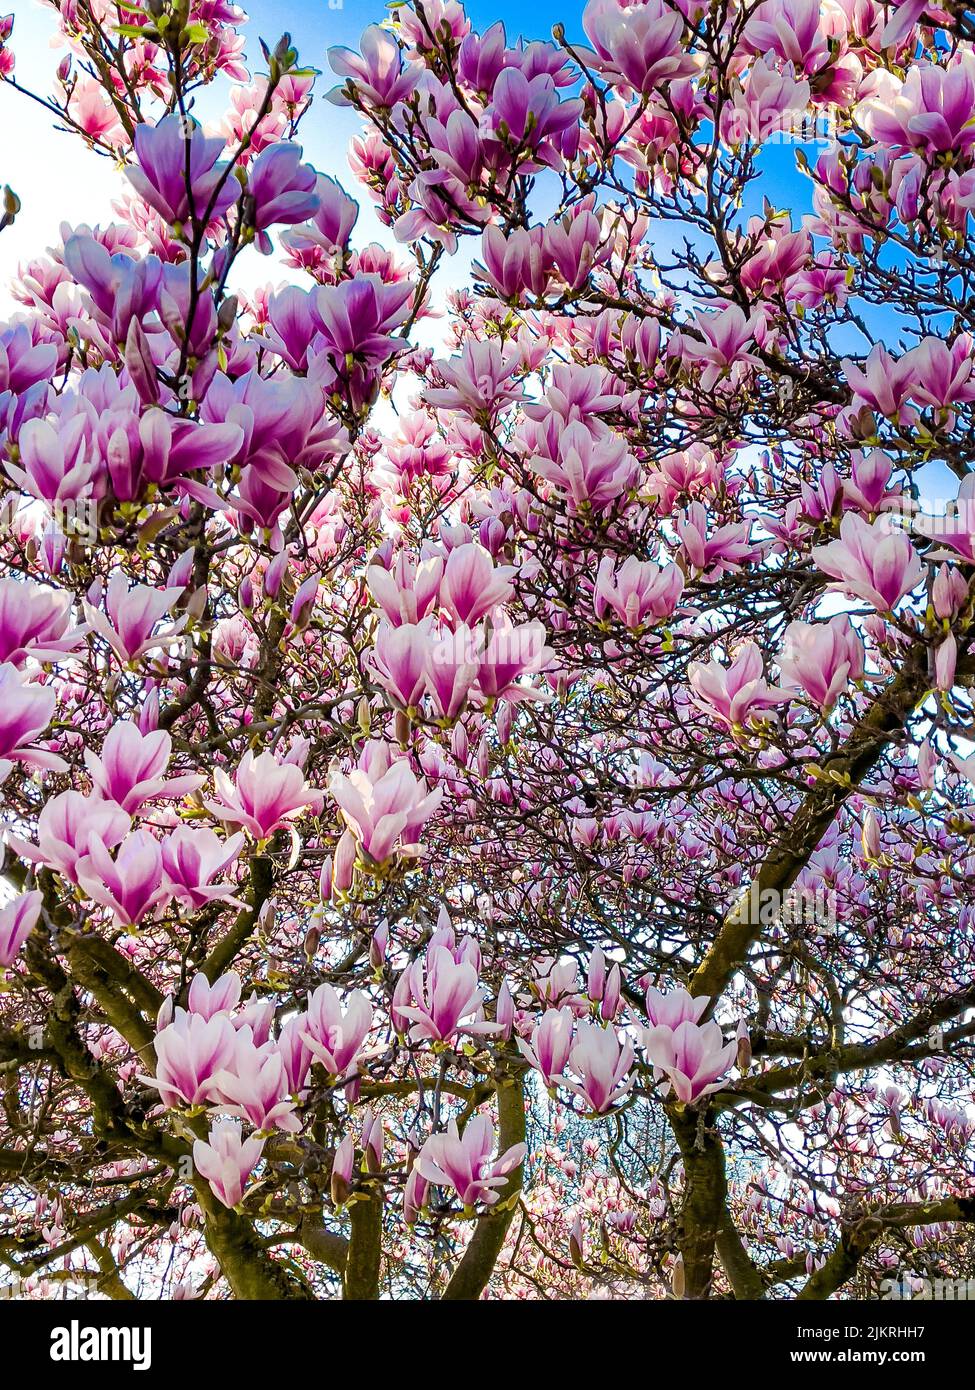 Le magnolia rose s'épanouie dans le ciel bleu Banque D'Images